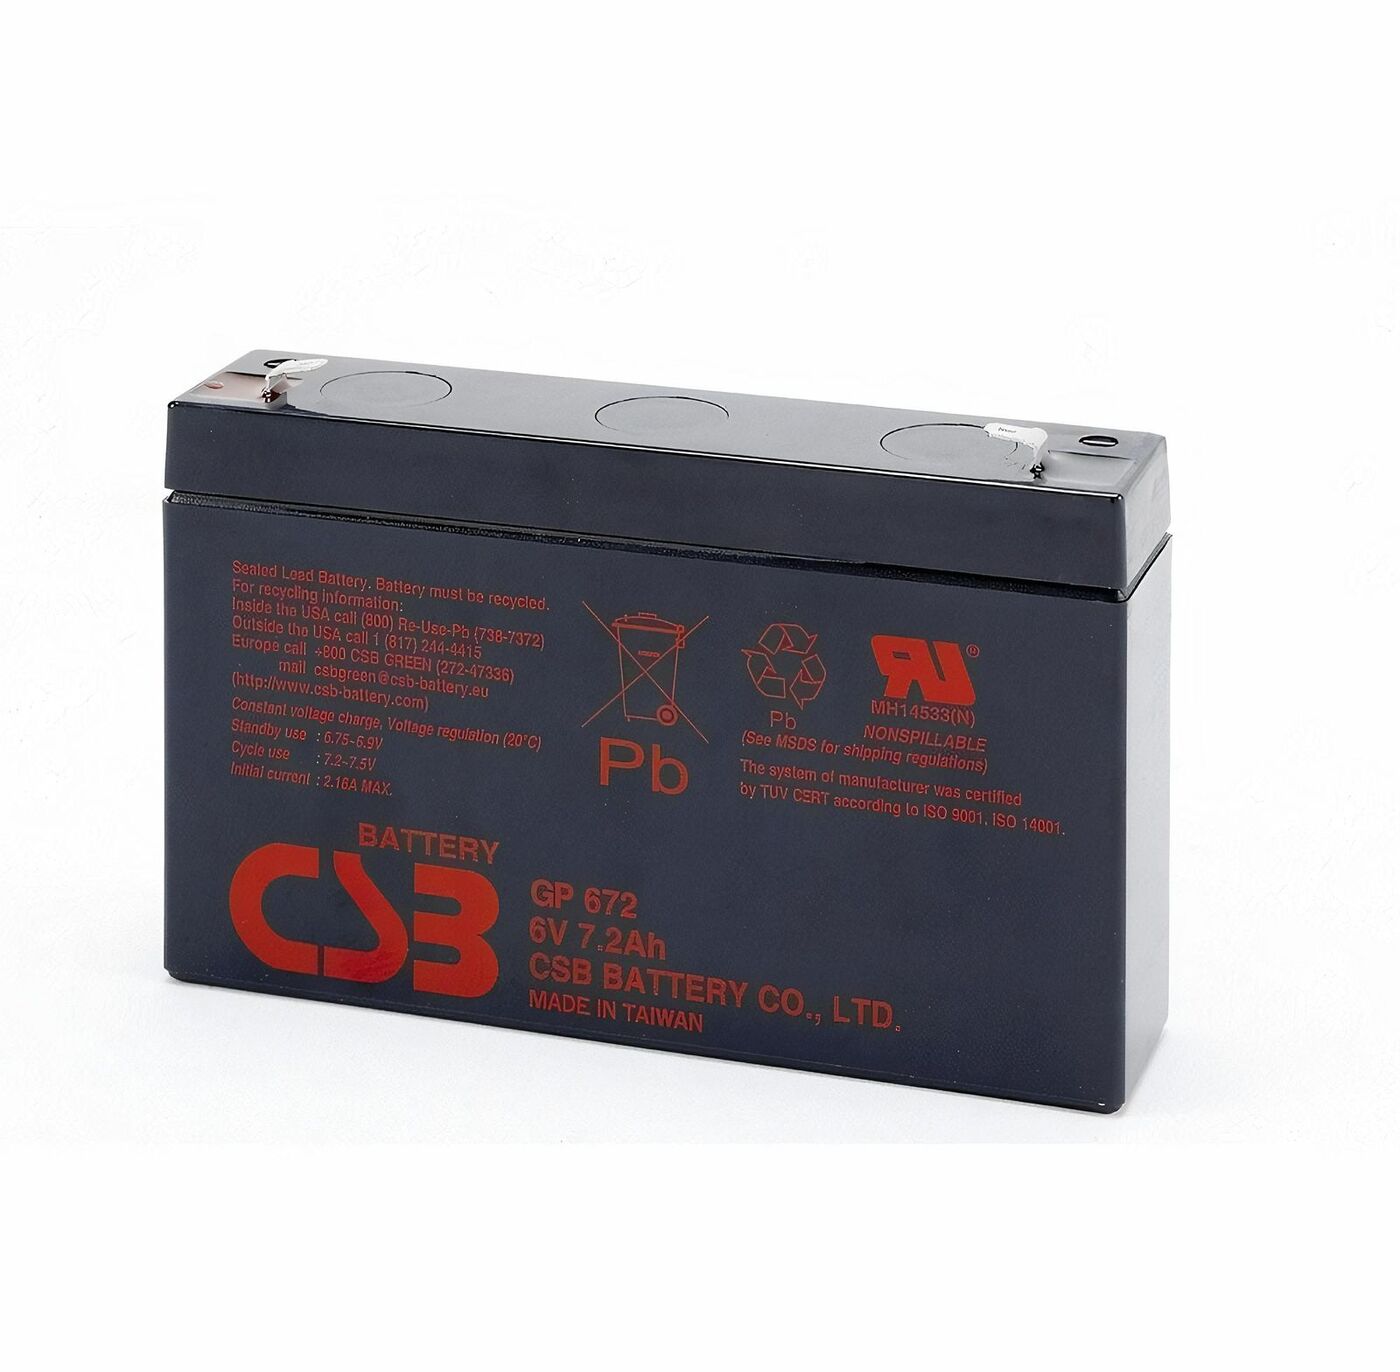 Свинцово-кислотный аккумулятор CSB GP672 6В 7.2Aч 247 свинцово кислотный аккумулятор контакт кт 6 4 5 6v 4 5ah 9071